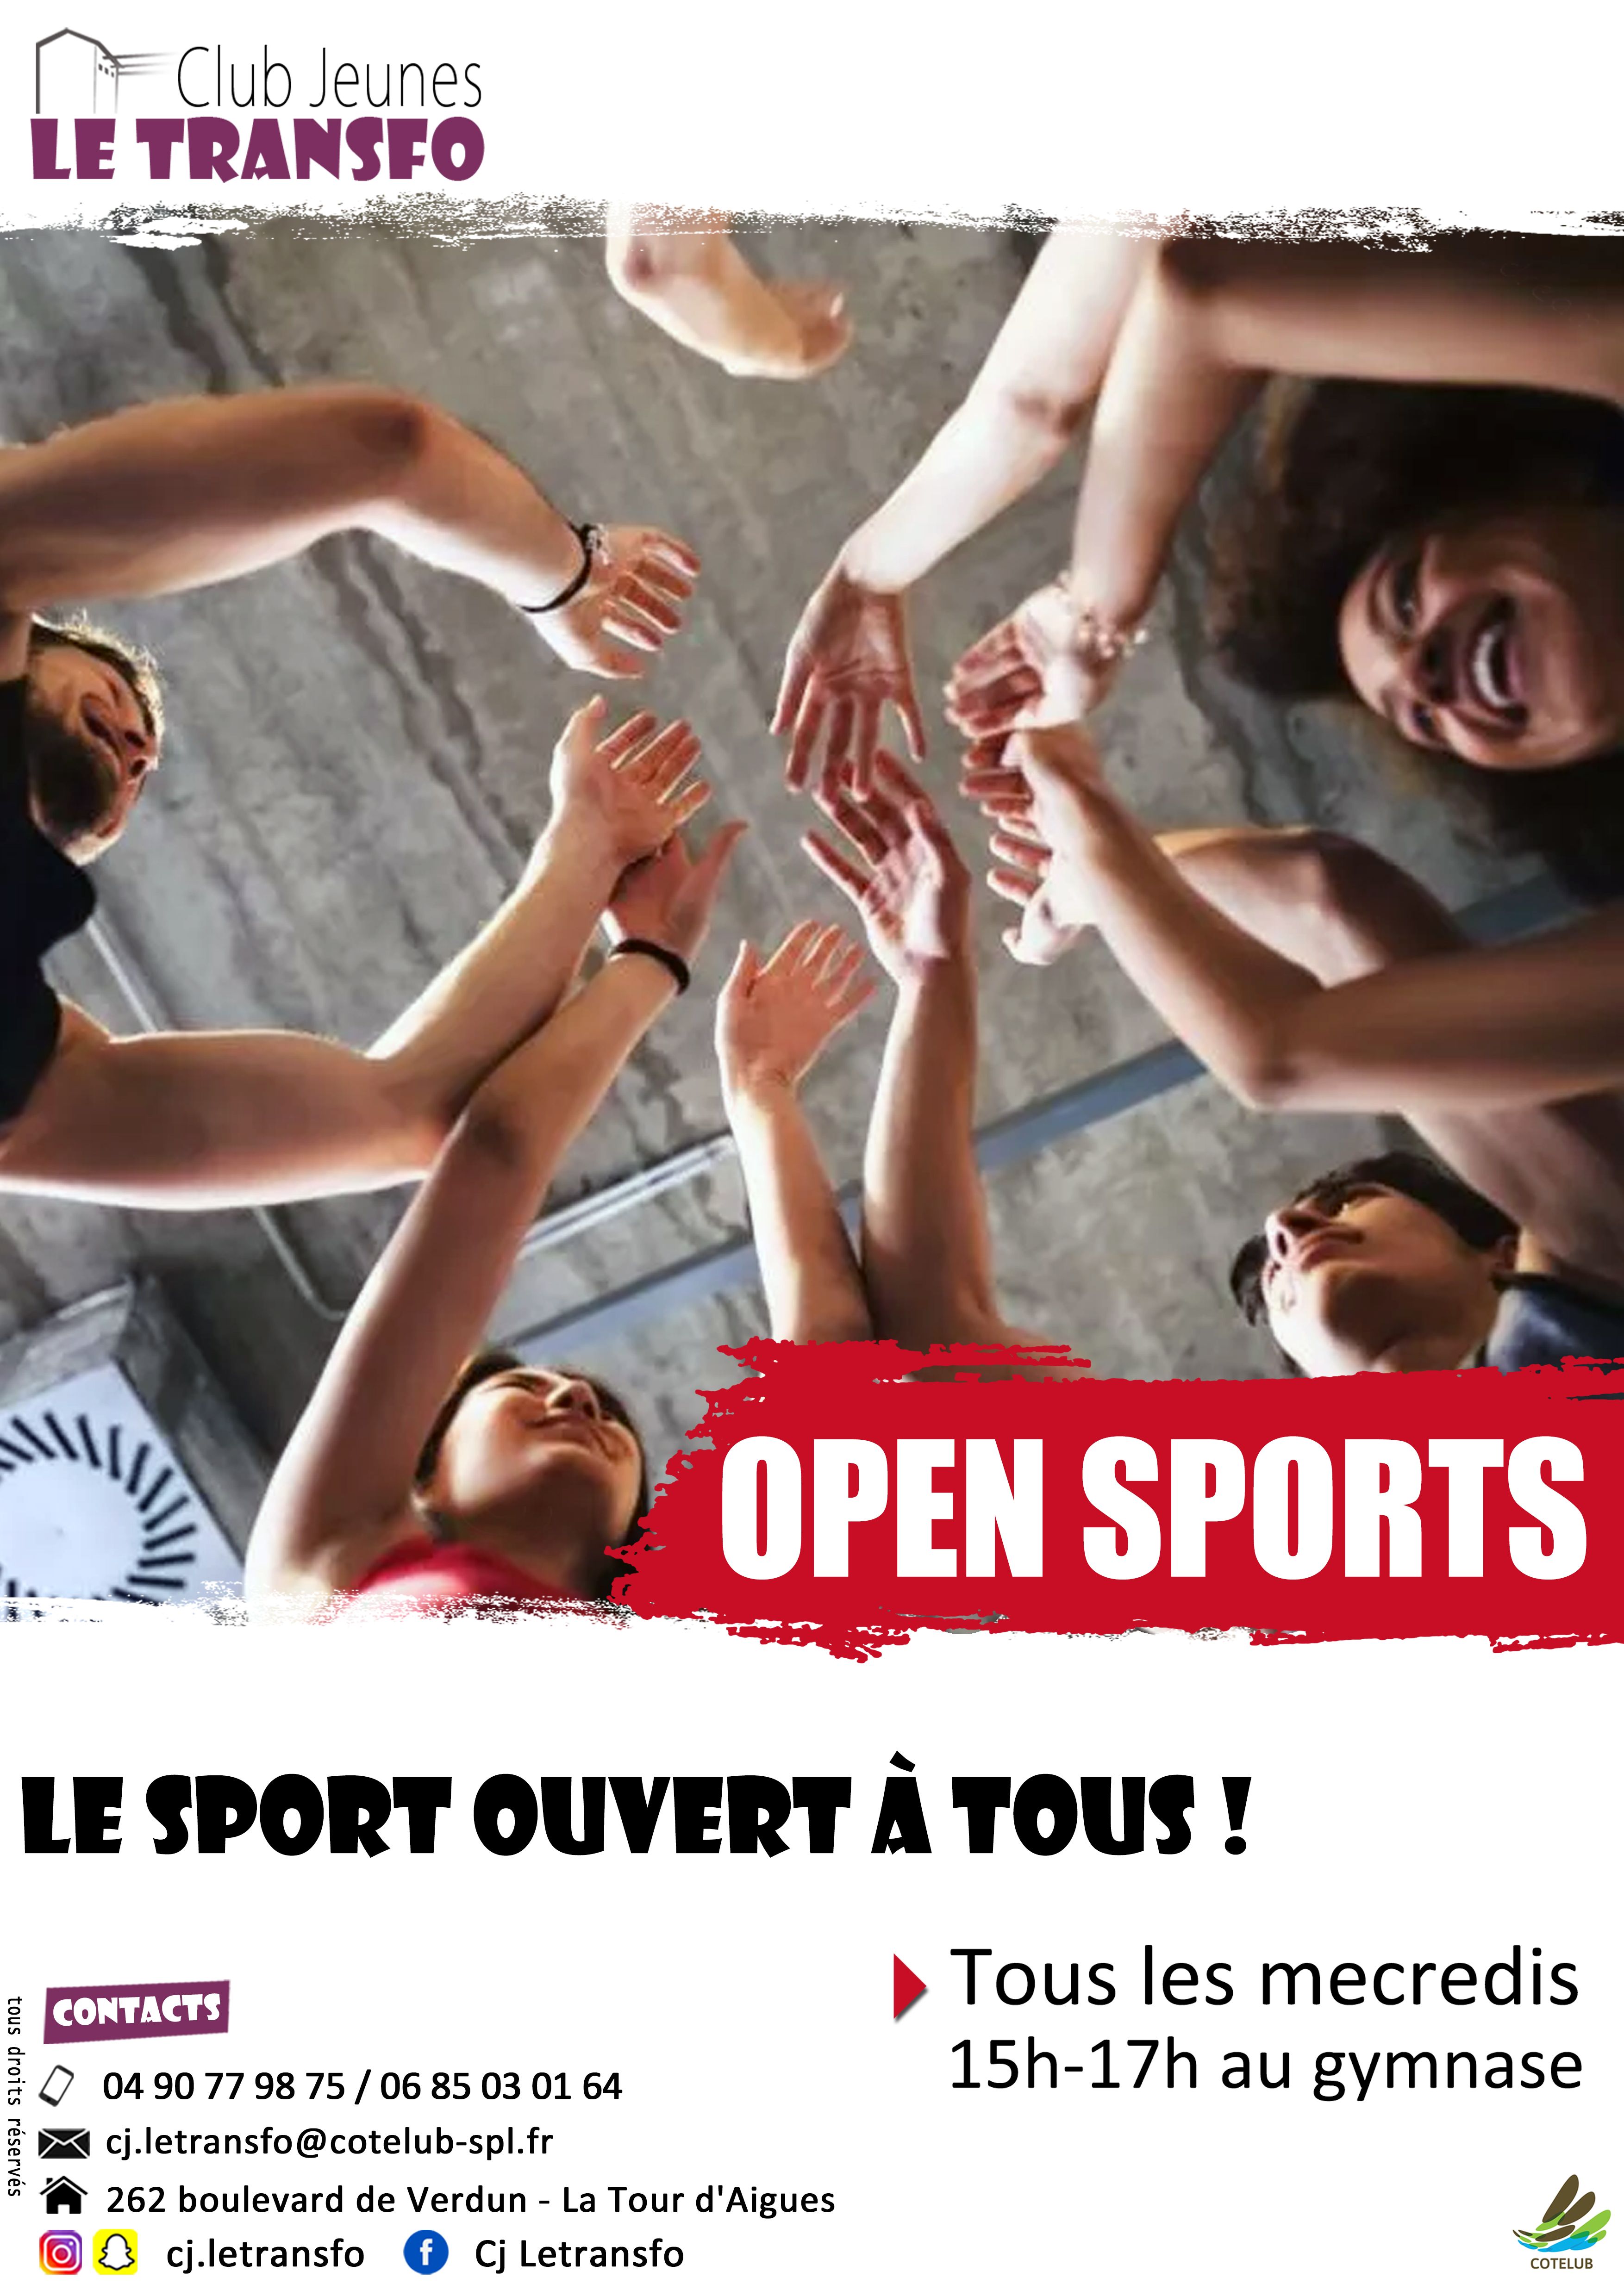 open sports